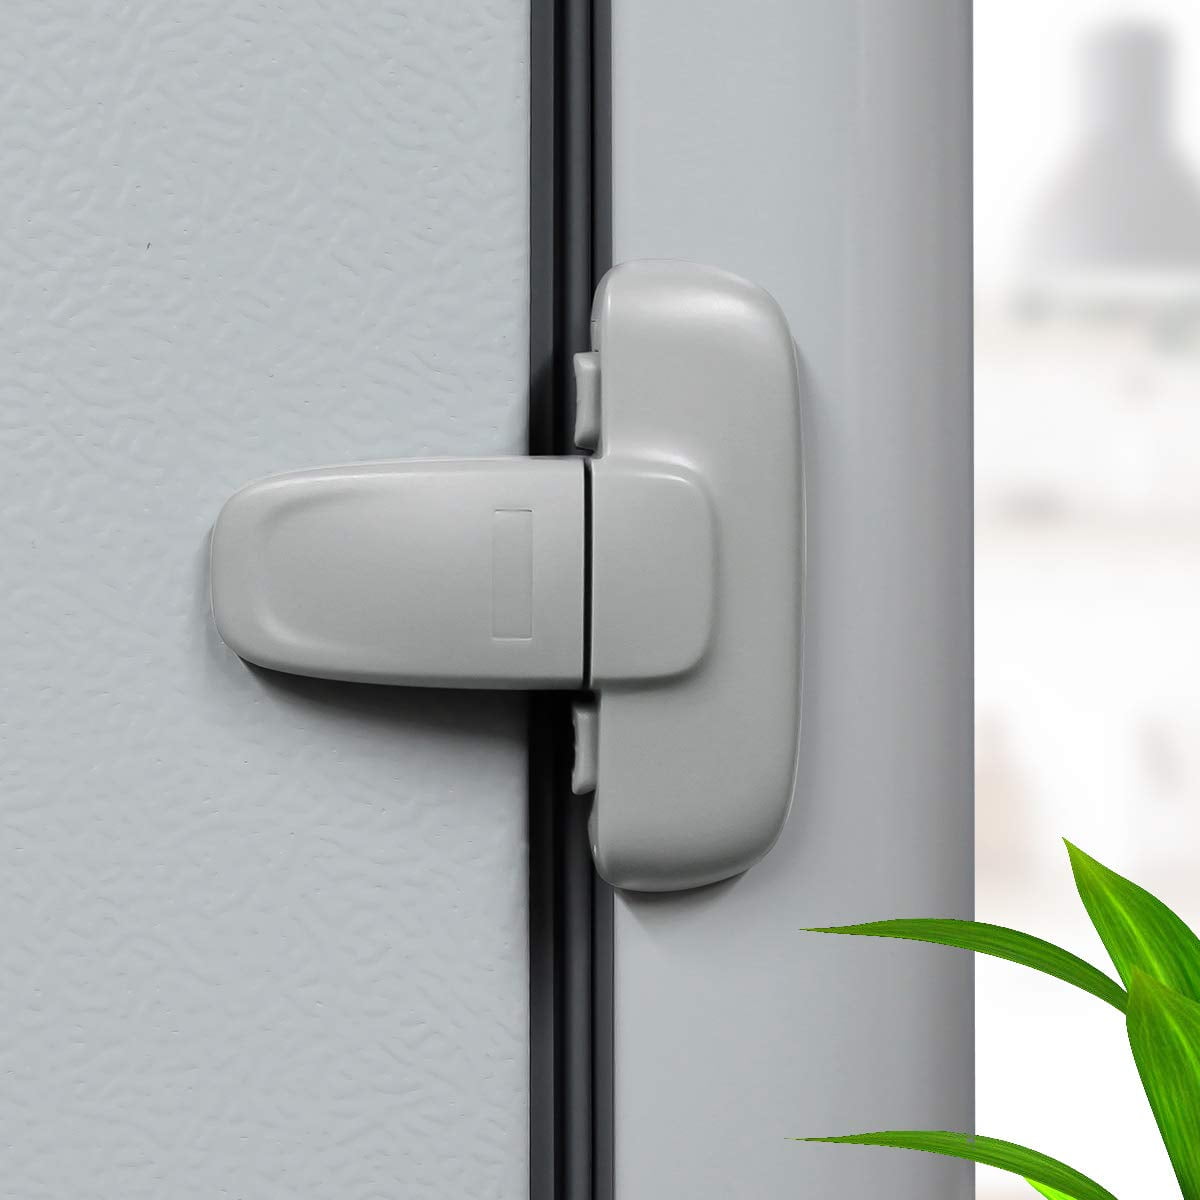 Door Lock Latch for Refrigerator Fridge Cabinet Freezer 